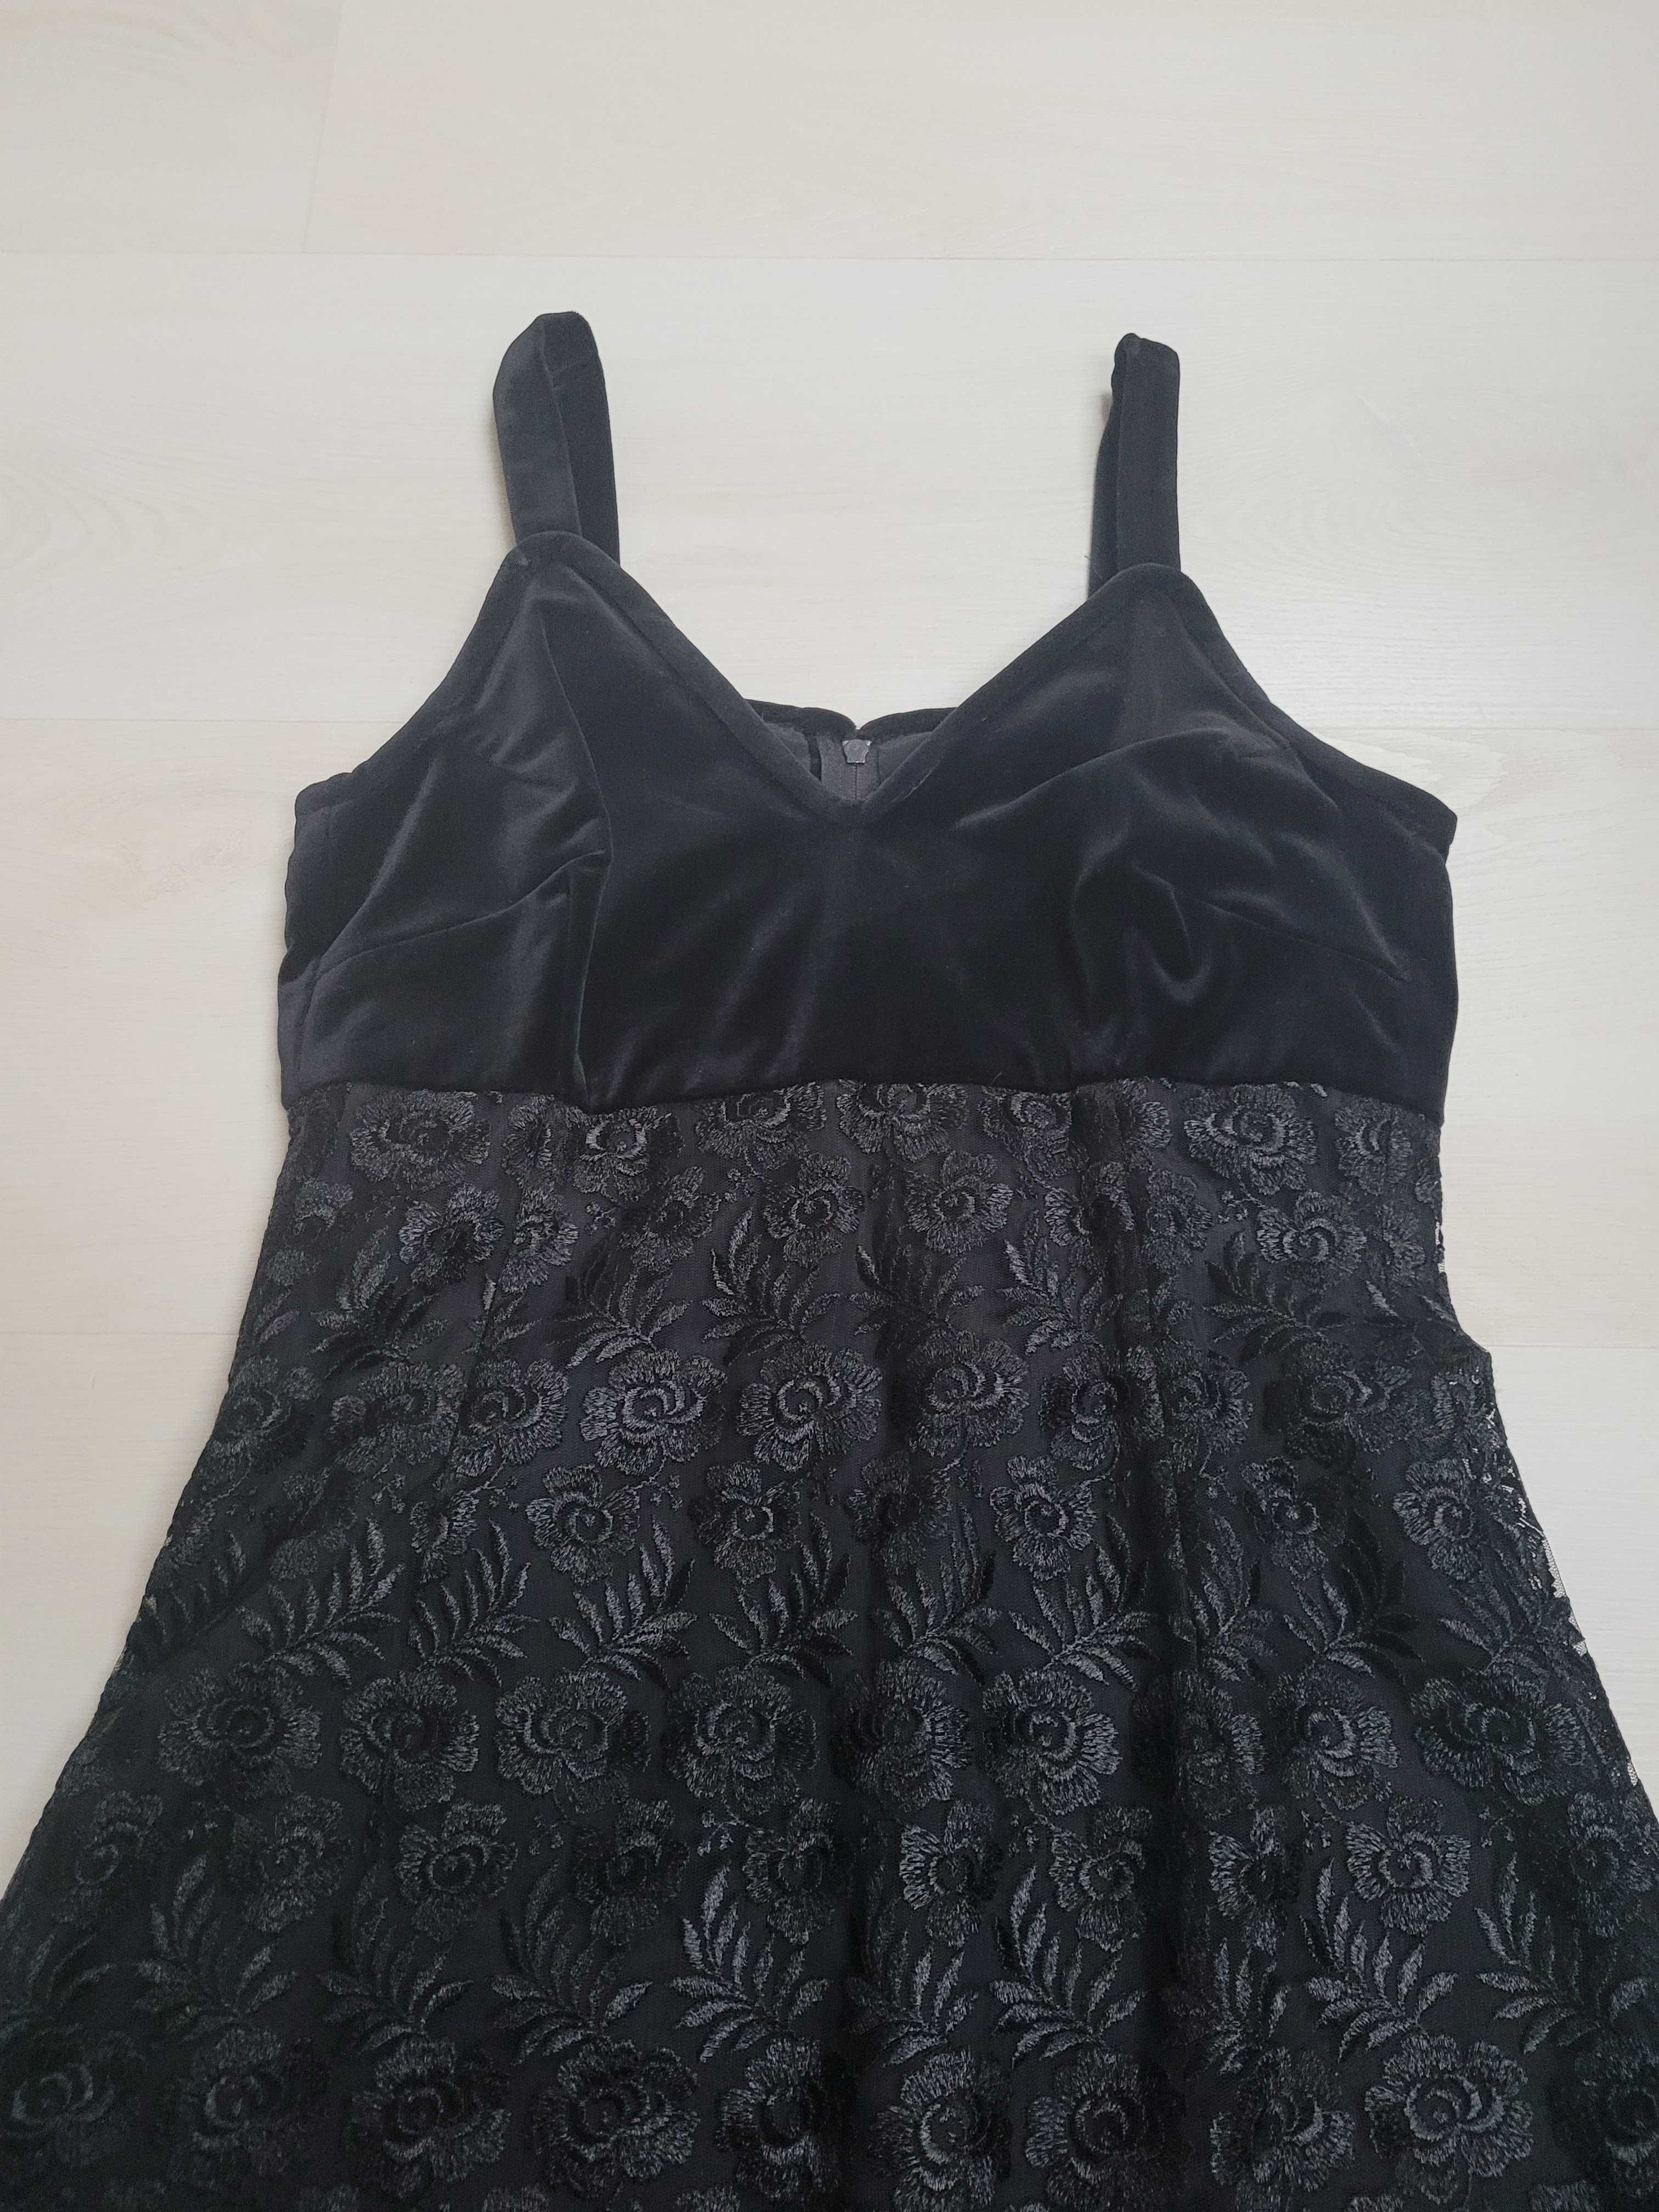 czarna sukienka mini koronkowa aksamit rozm S jak NOWA 1x ubrana